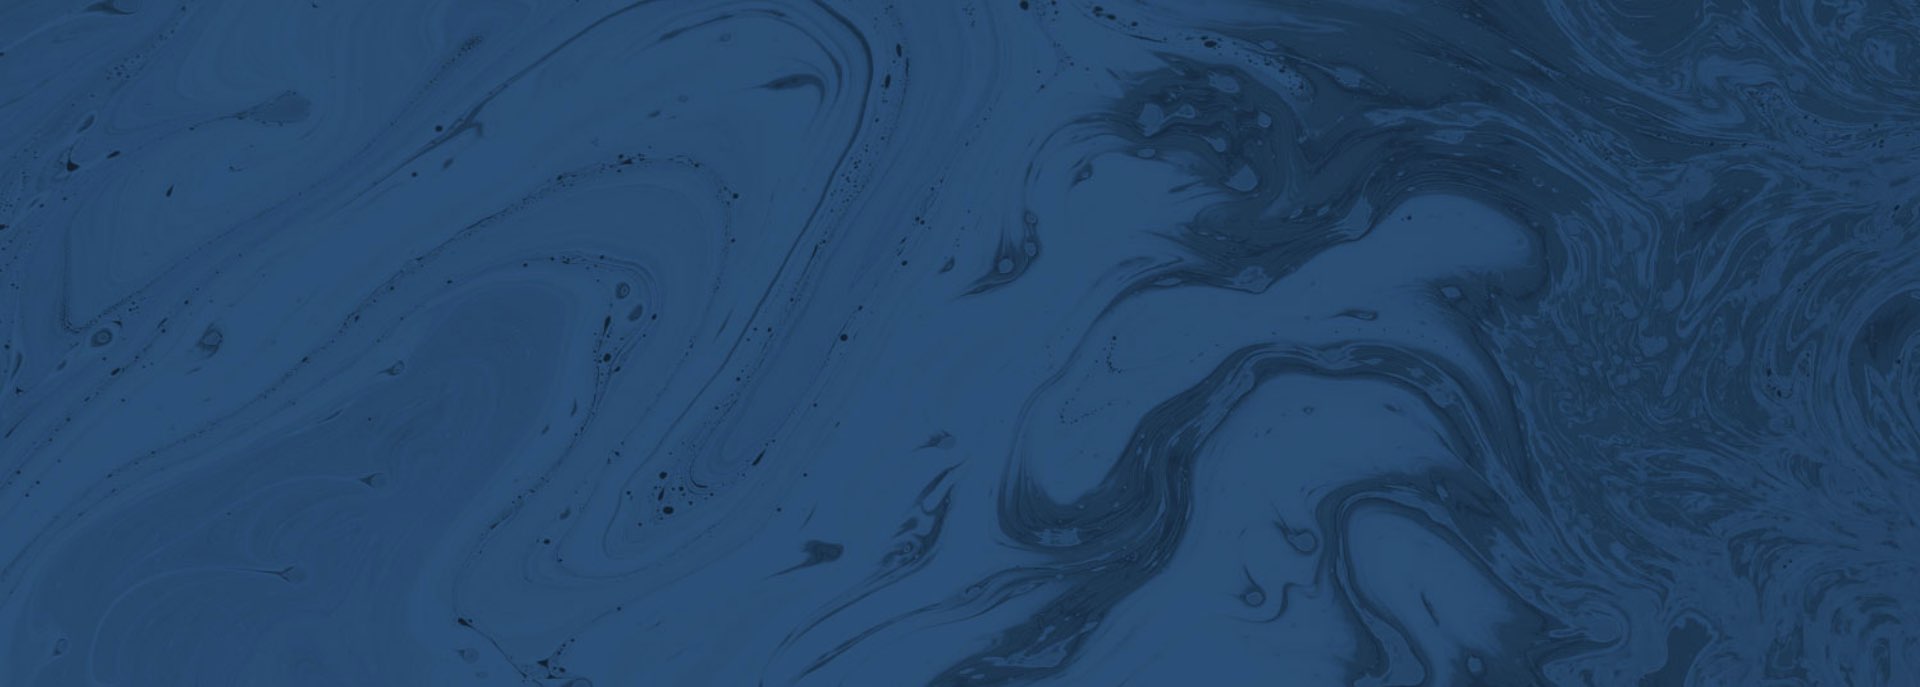 Blue swirls background